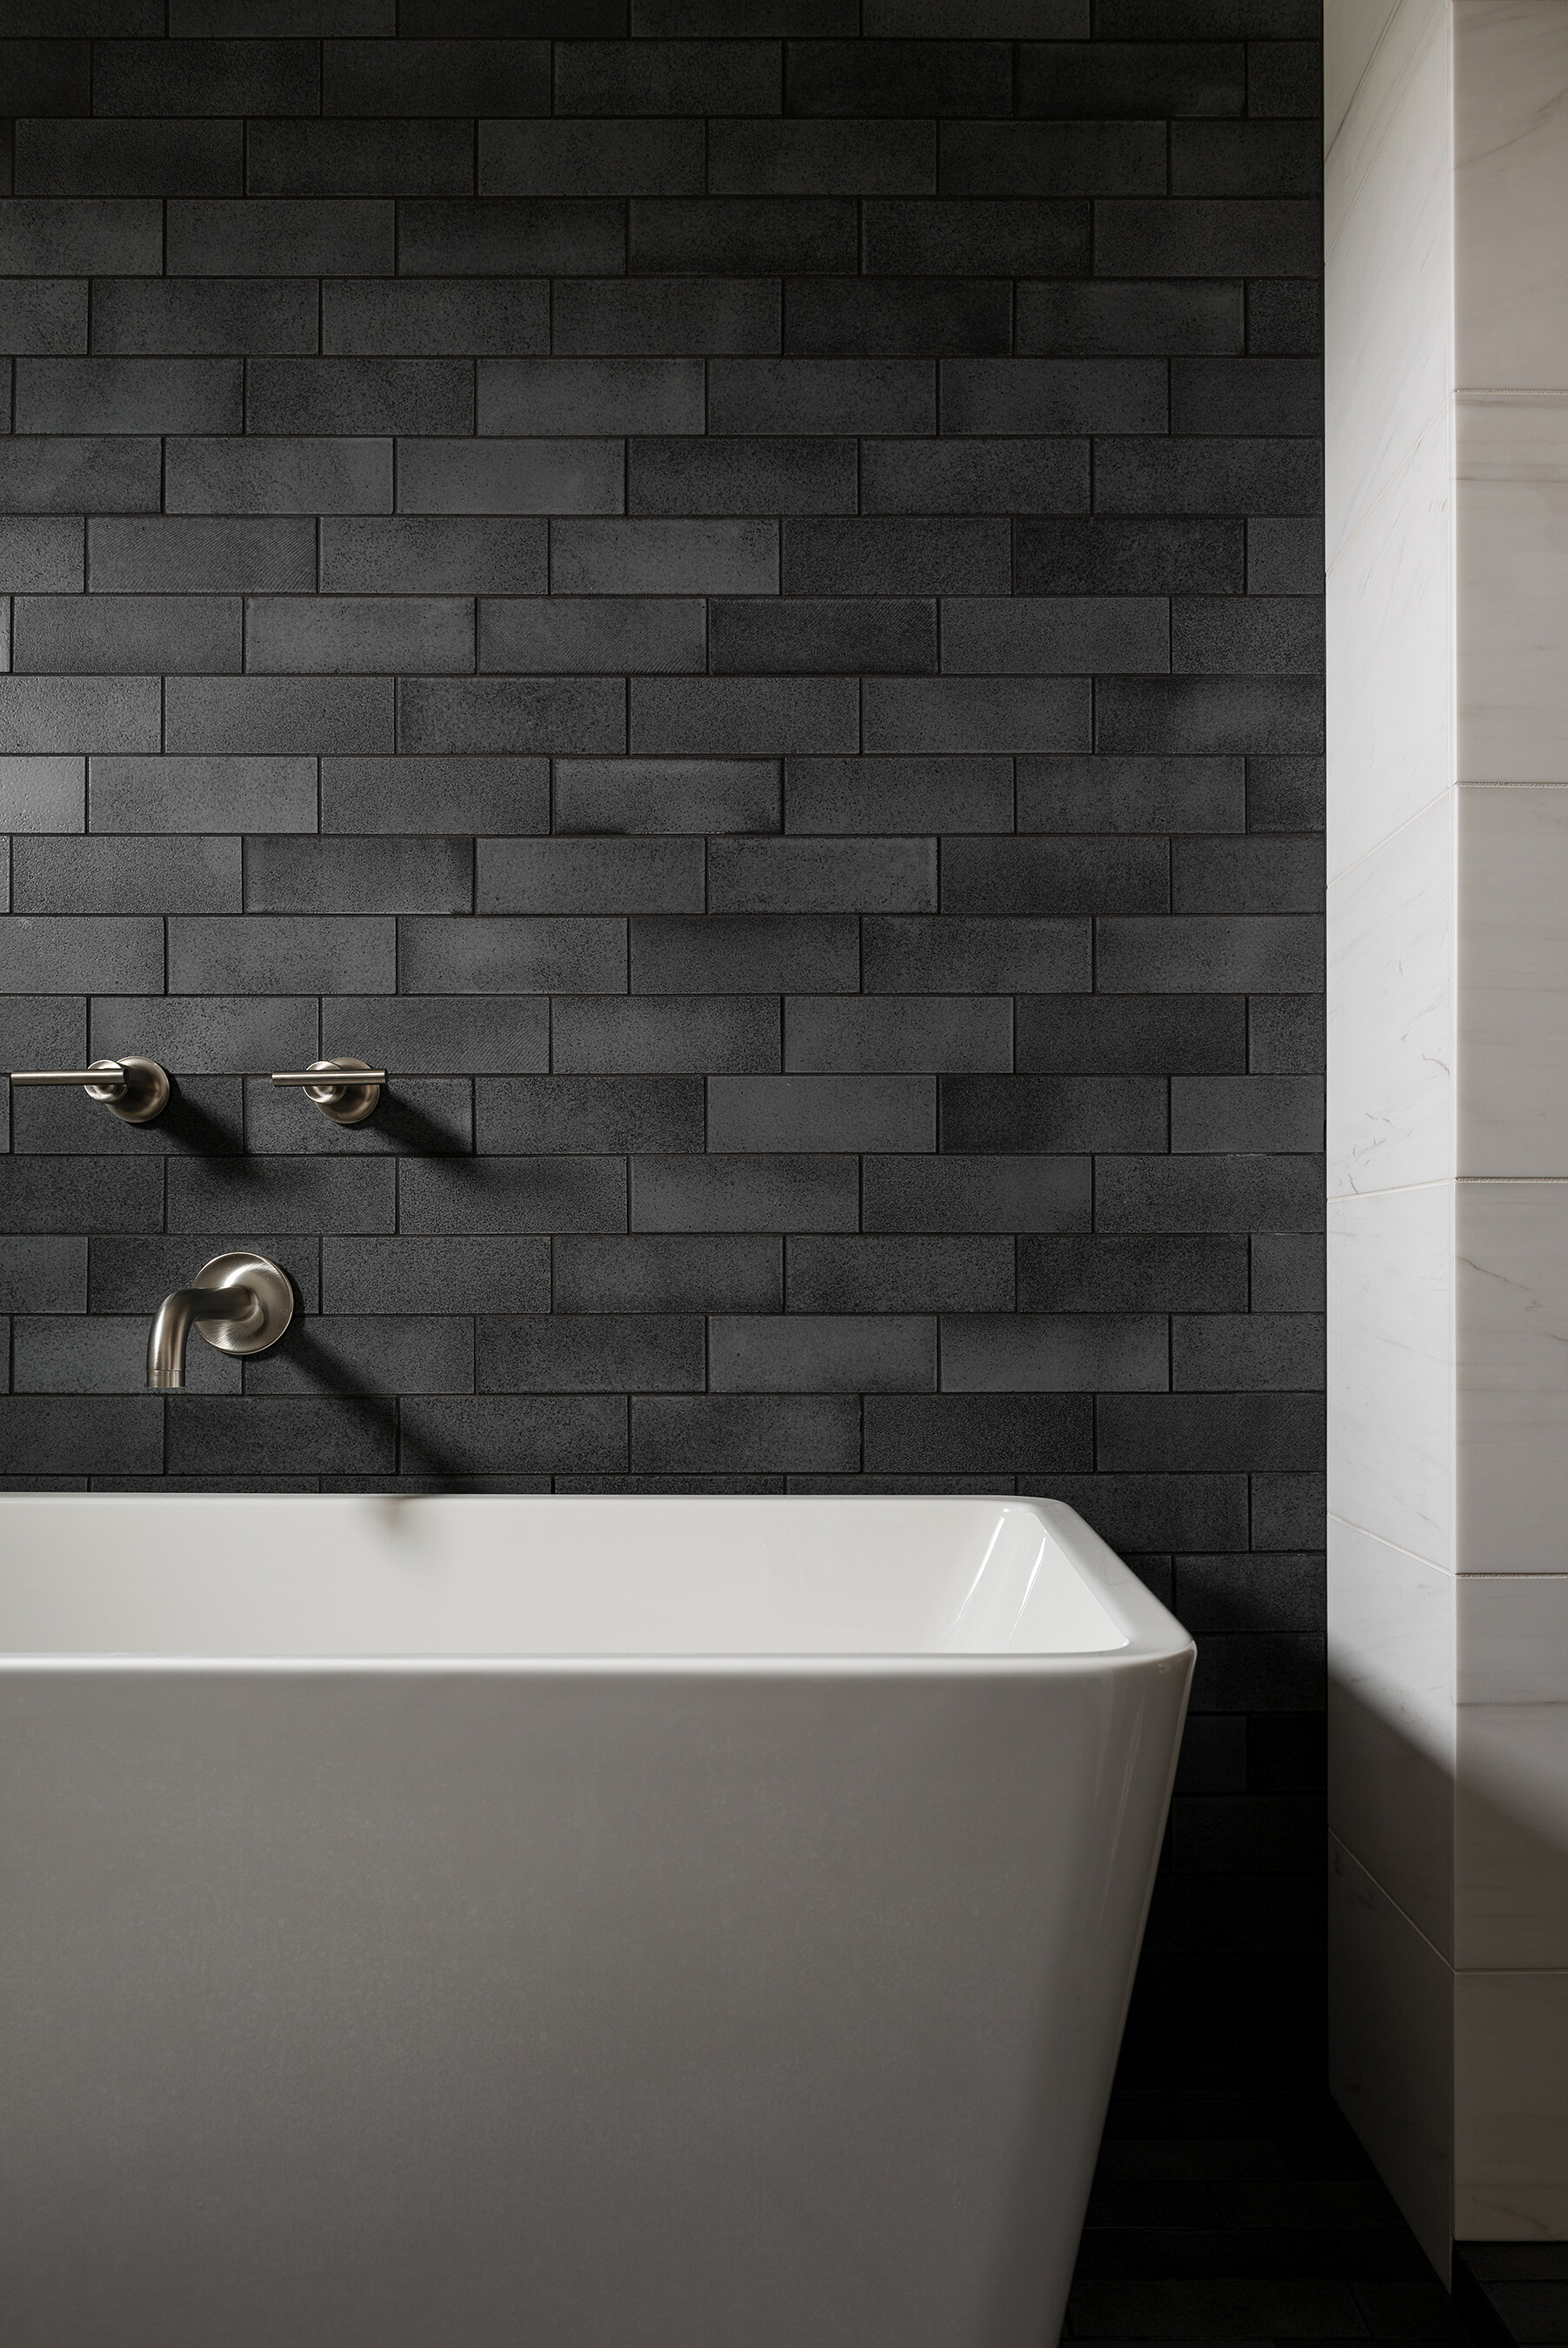 Black tile in bathroom shower walls